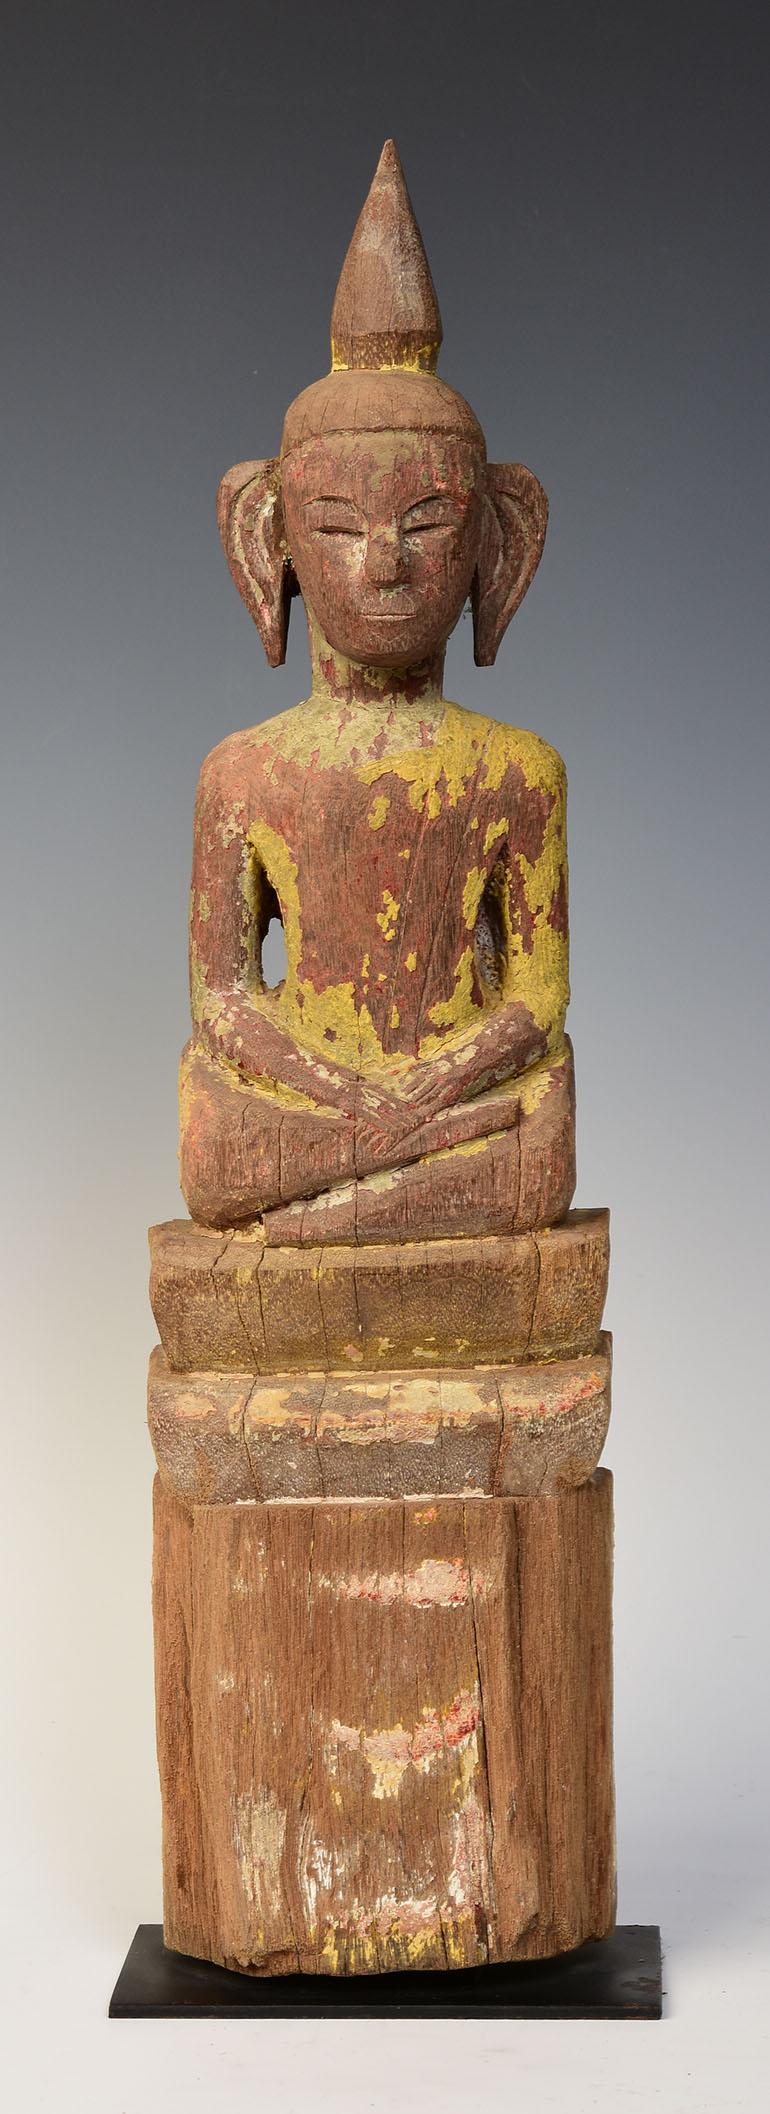 Holzbuddha aus Laos, der in der Mara-Vijaya-Haltung (die Erde zum Zeugen rufen) auf einem Sockel sitzt.

Alter: Laos, 19. Jahrhundert
Größe: Höhe 49,6 C.M. / Breite 13 C.M.
Größe einschließlich Ständer: Höhe 51.5 C.M.
Zustand: Insgesamt guter